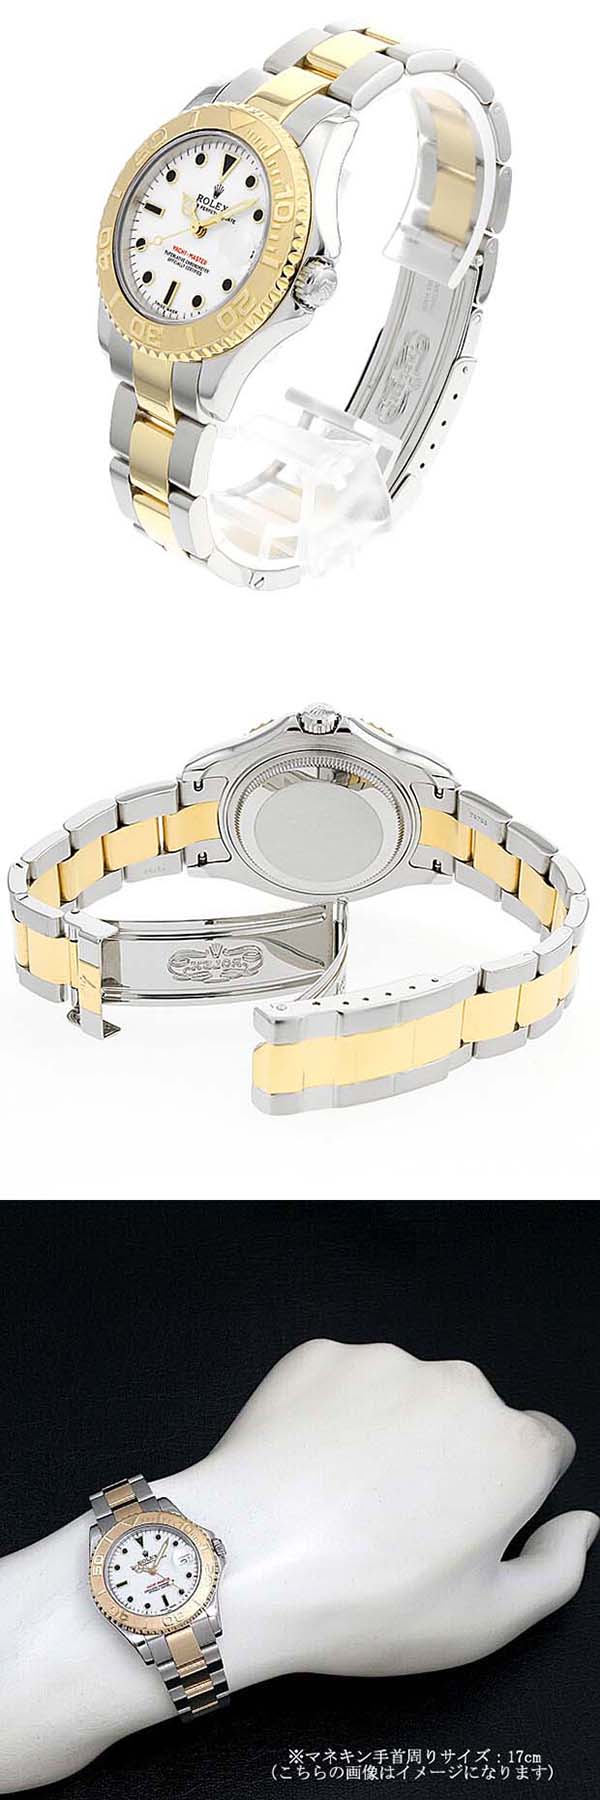 【会員登録でポイント獲得】Rolex  Yacht-master コピー時計 168623、自信持てる腕時計